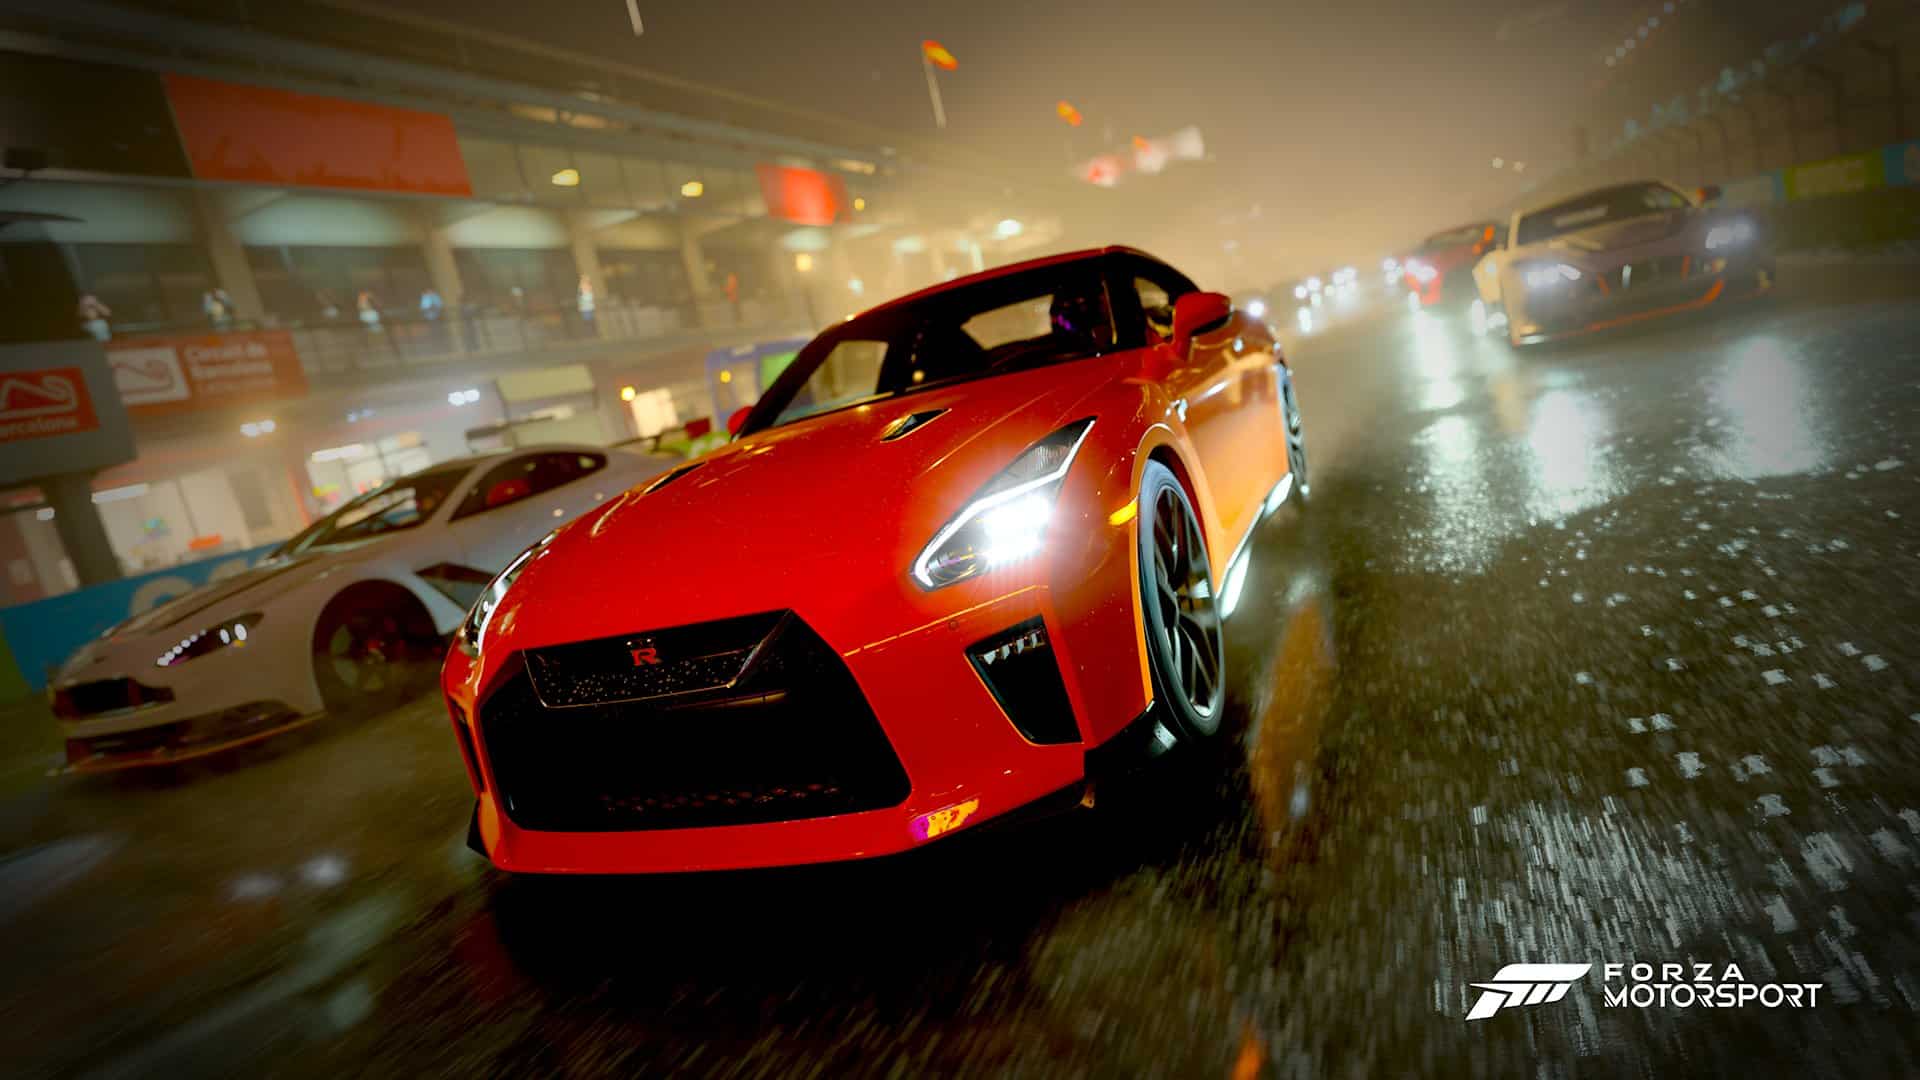 Forza Motorsport: Principales características